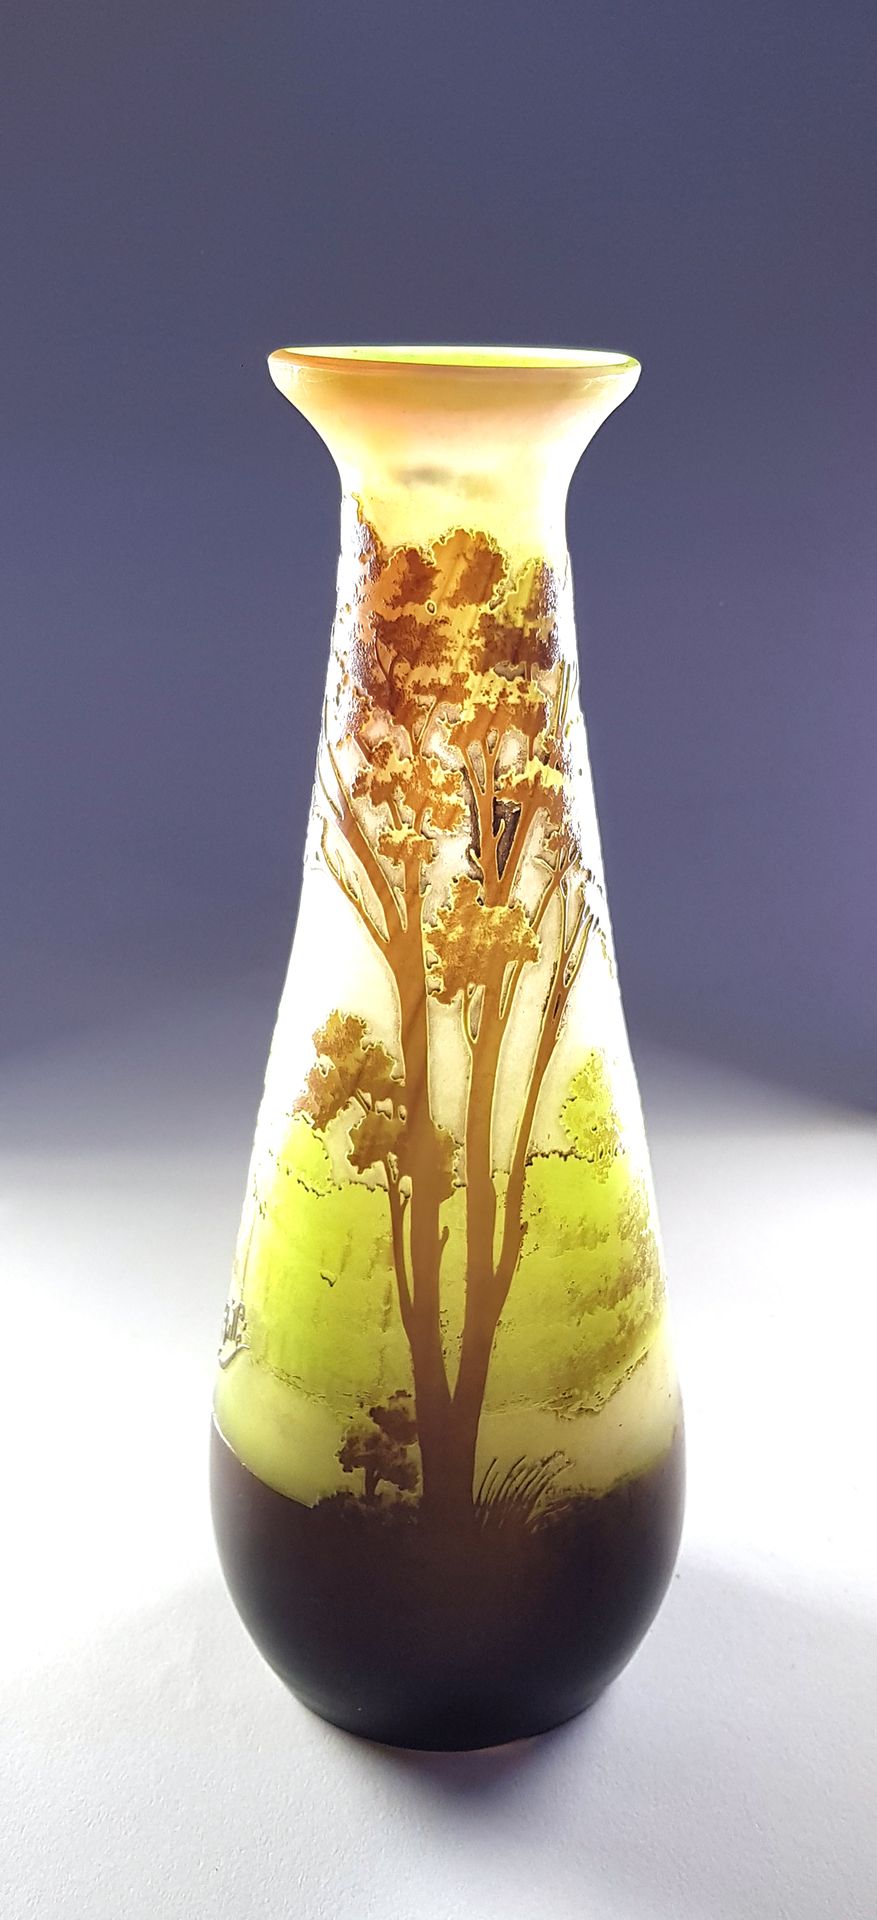 Null 加莱机构(1904-1936)

"湖泊景观"。

喇叭形花瓶，颈部外翻

多层玻璃证明，酸蚀装饰，灰色背景上的棕色和绿色处理，有绿色阴影

签名为G&hellip;